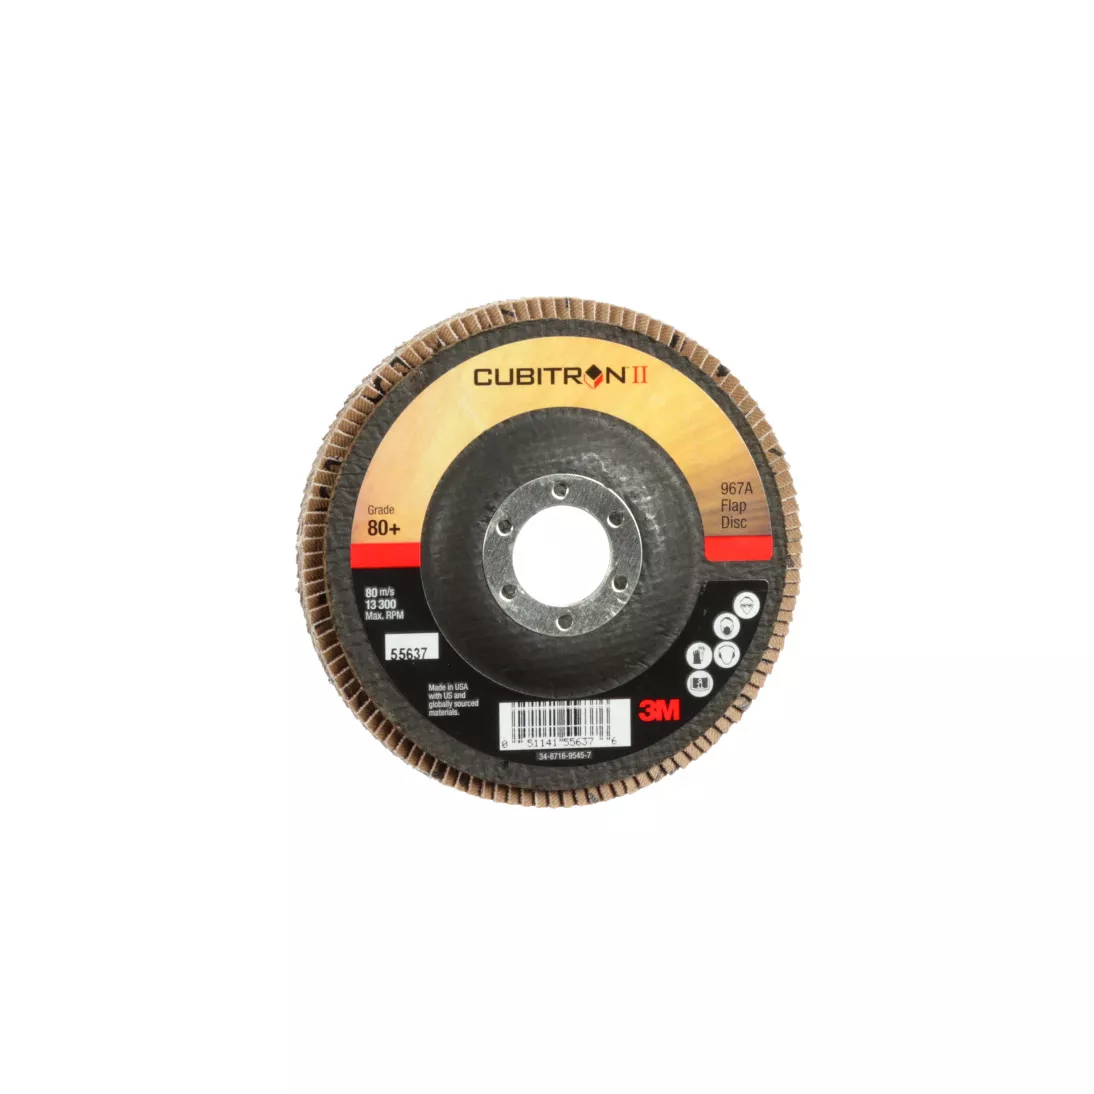 3M™ Cubitron™ II Flap Disc 967A, 80+, T27, 4-1/2 in x 7/8 in, Giant, 10
ea/Case